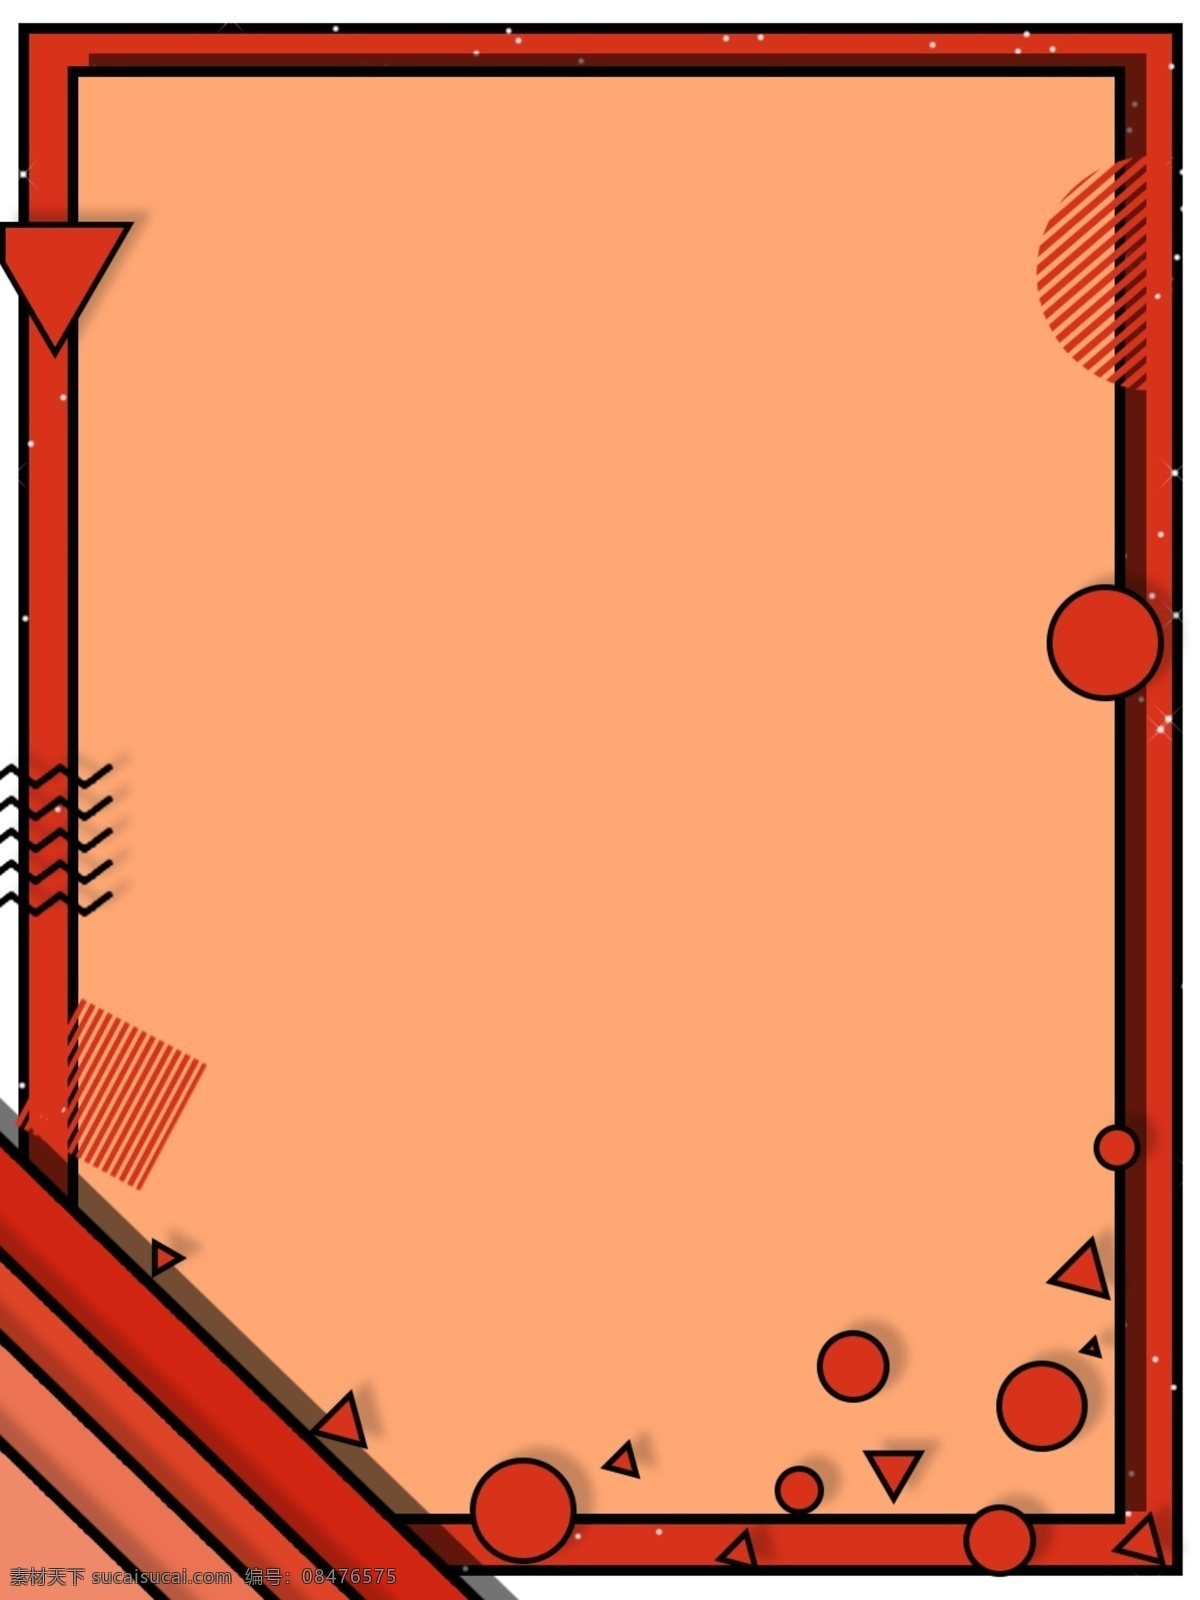 原创 砖 红 简约 时尚 边框 背景 促销 文艺 几何 线条 孟菲斯 砖红色